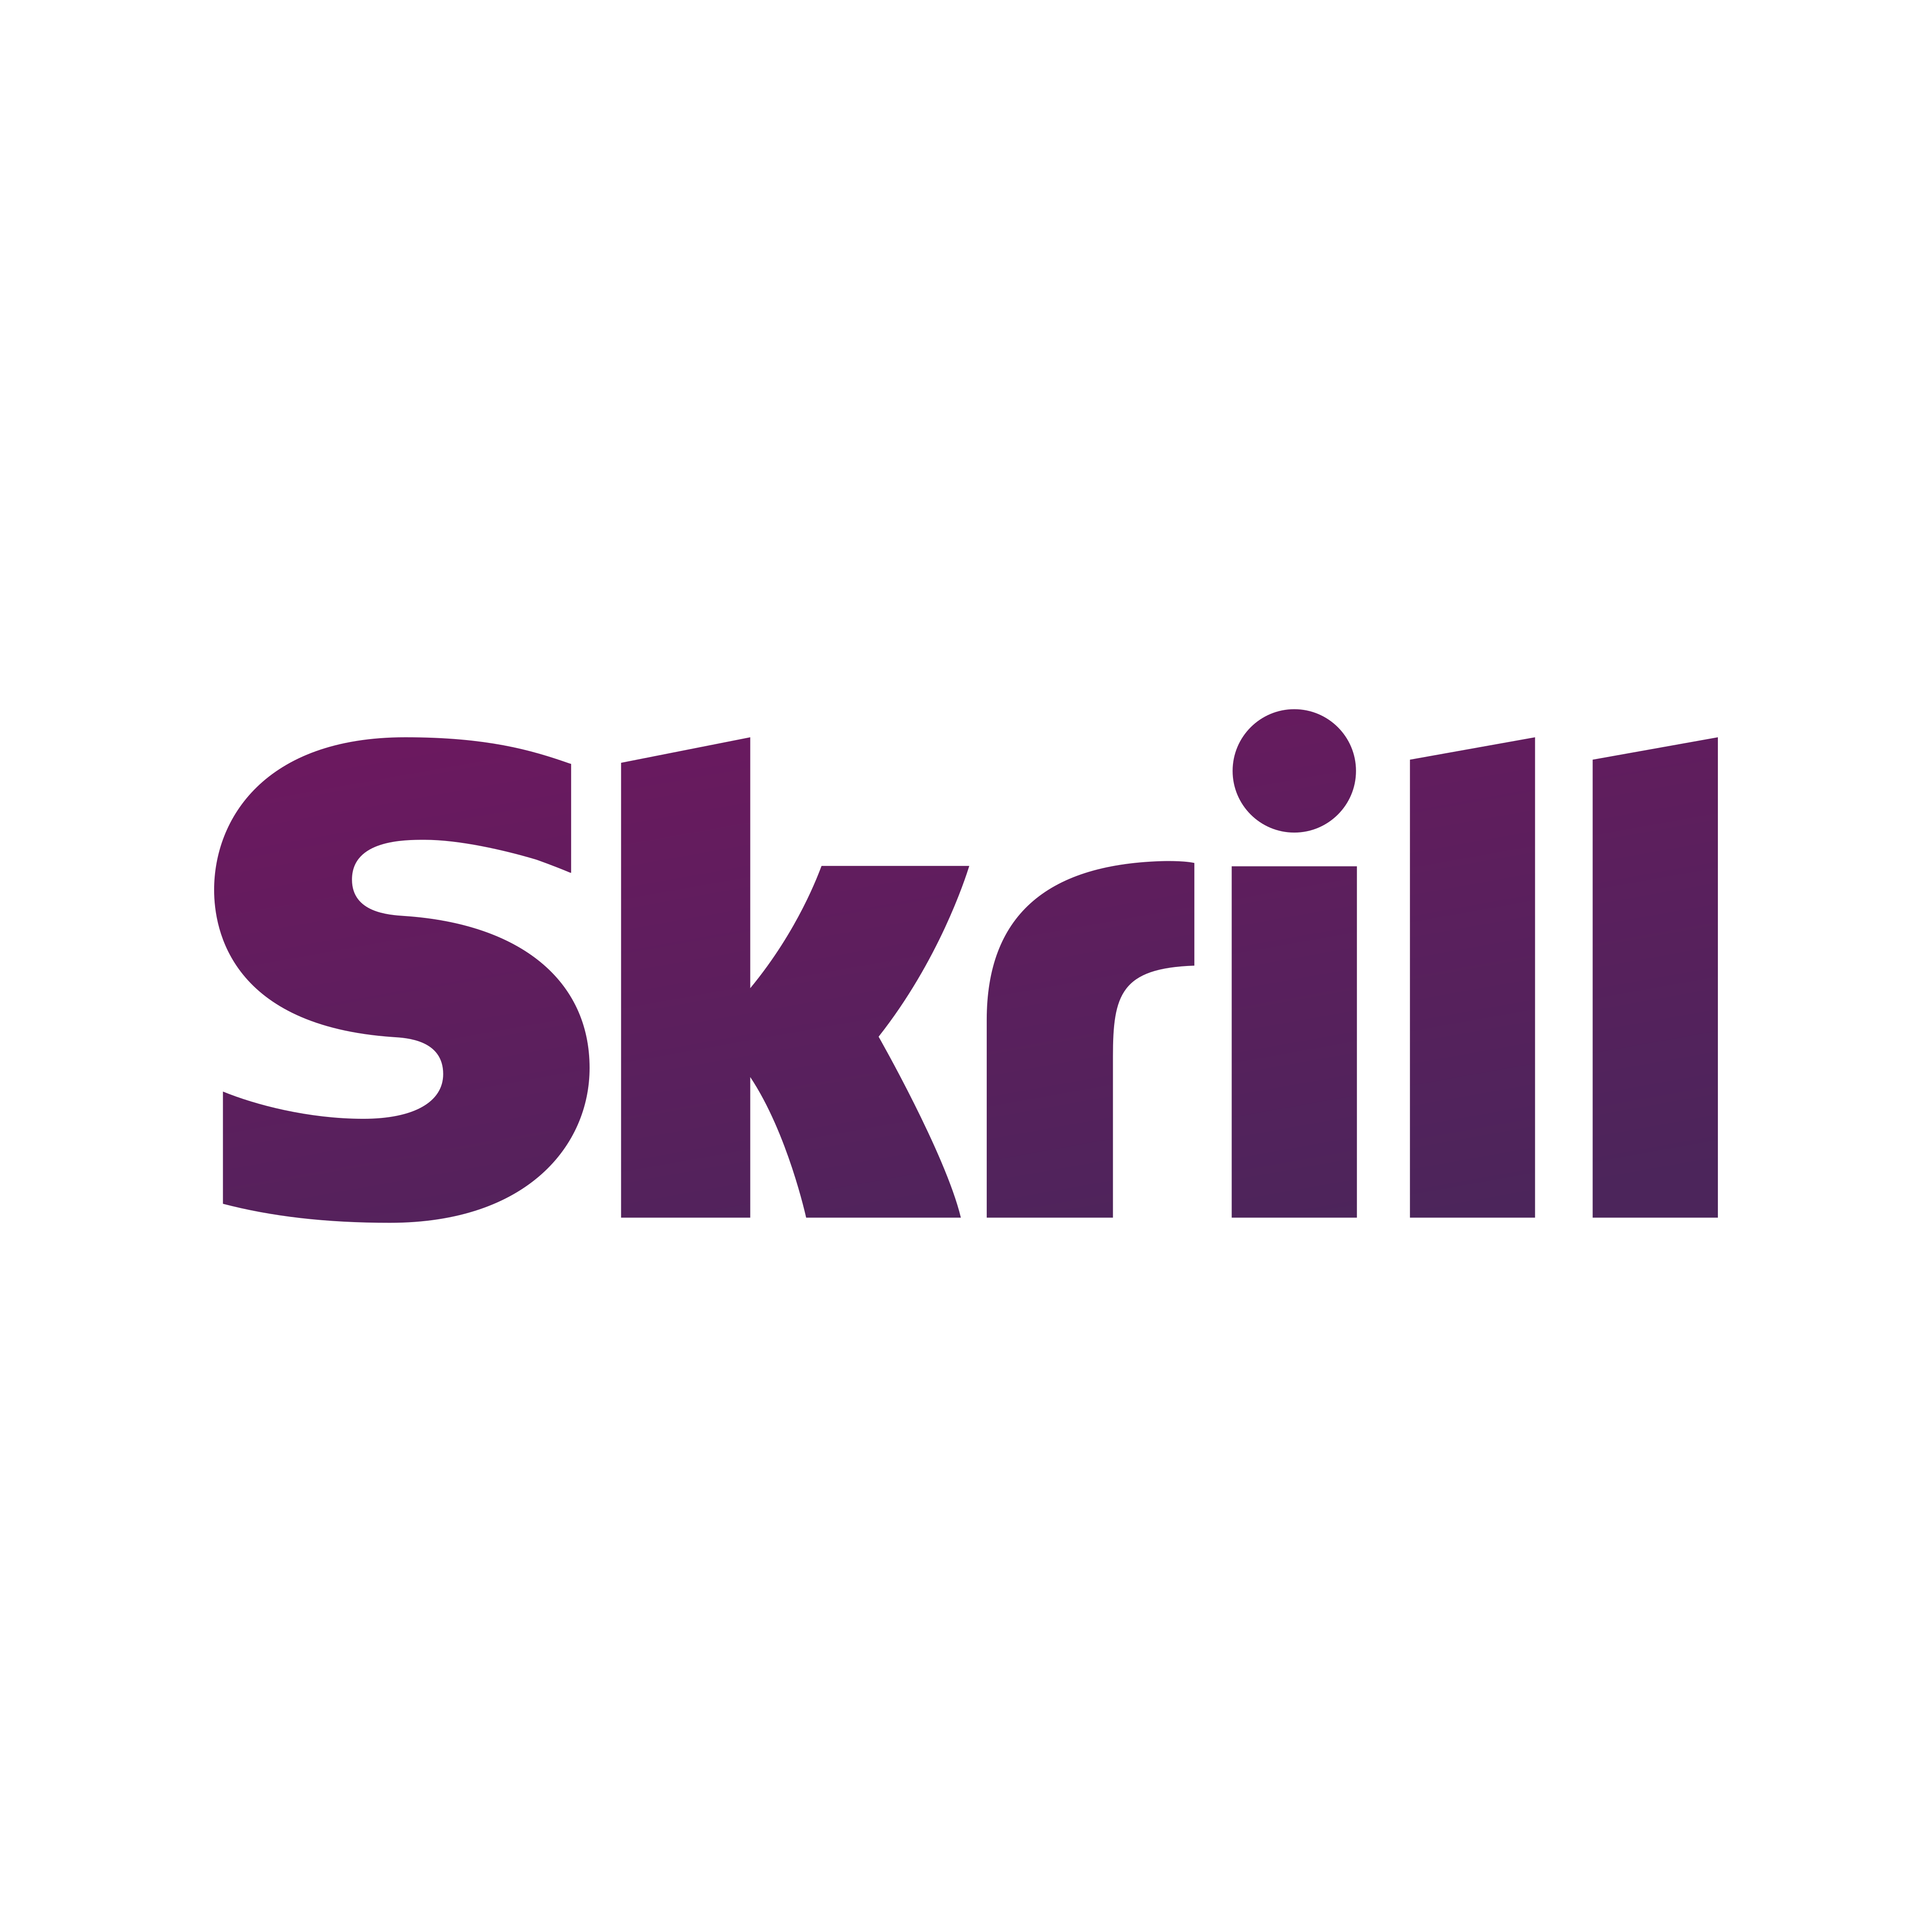 skrill logo 0 - Skrill Logo